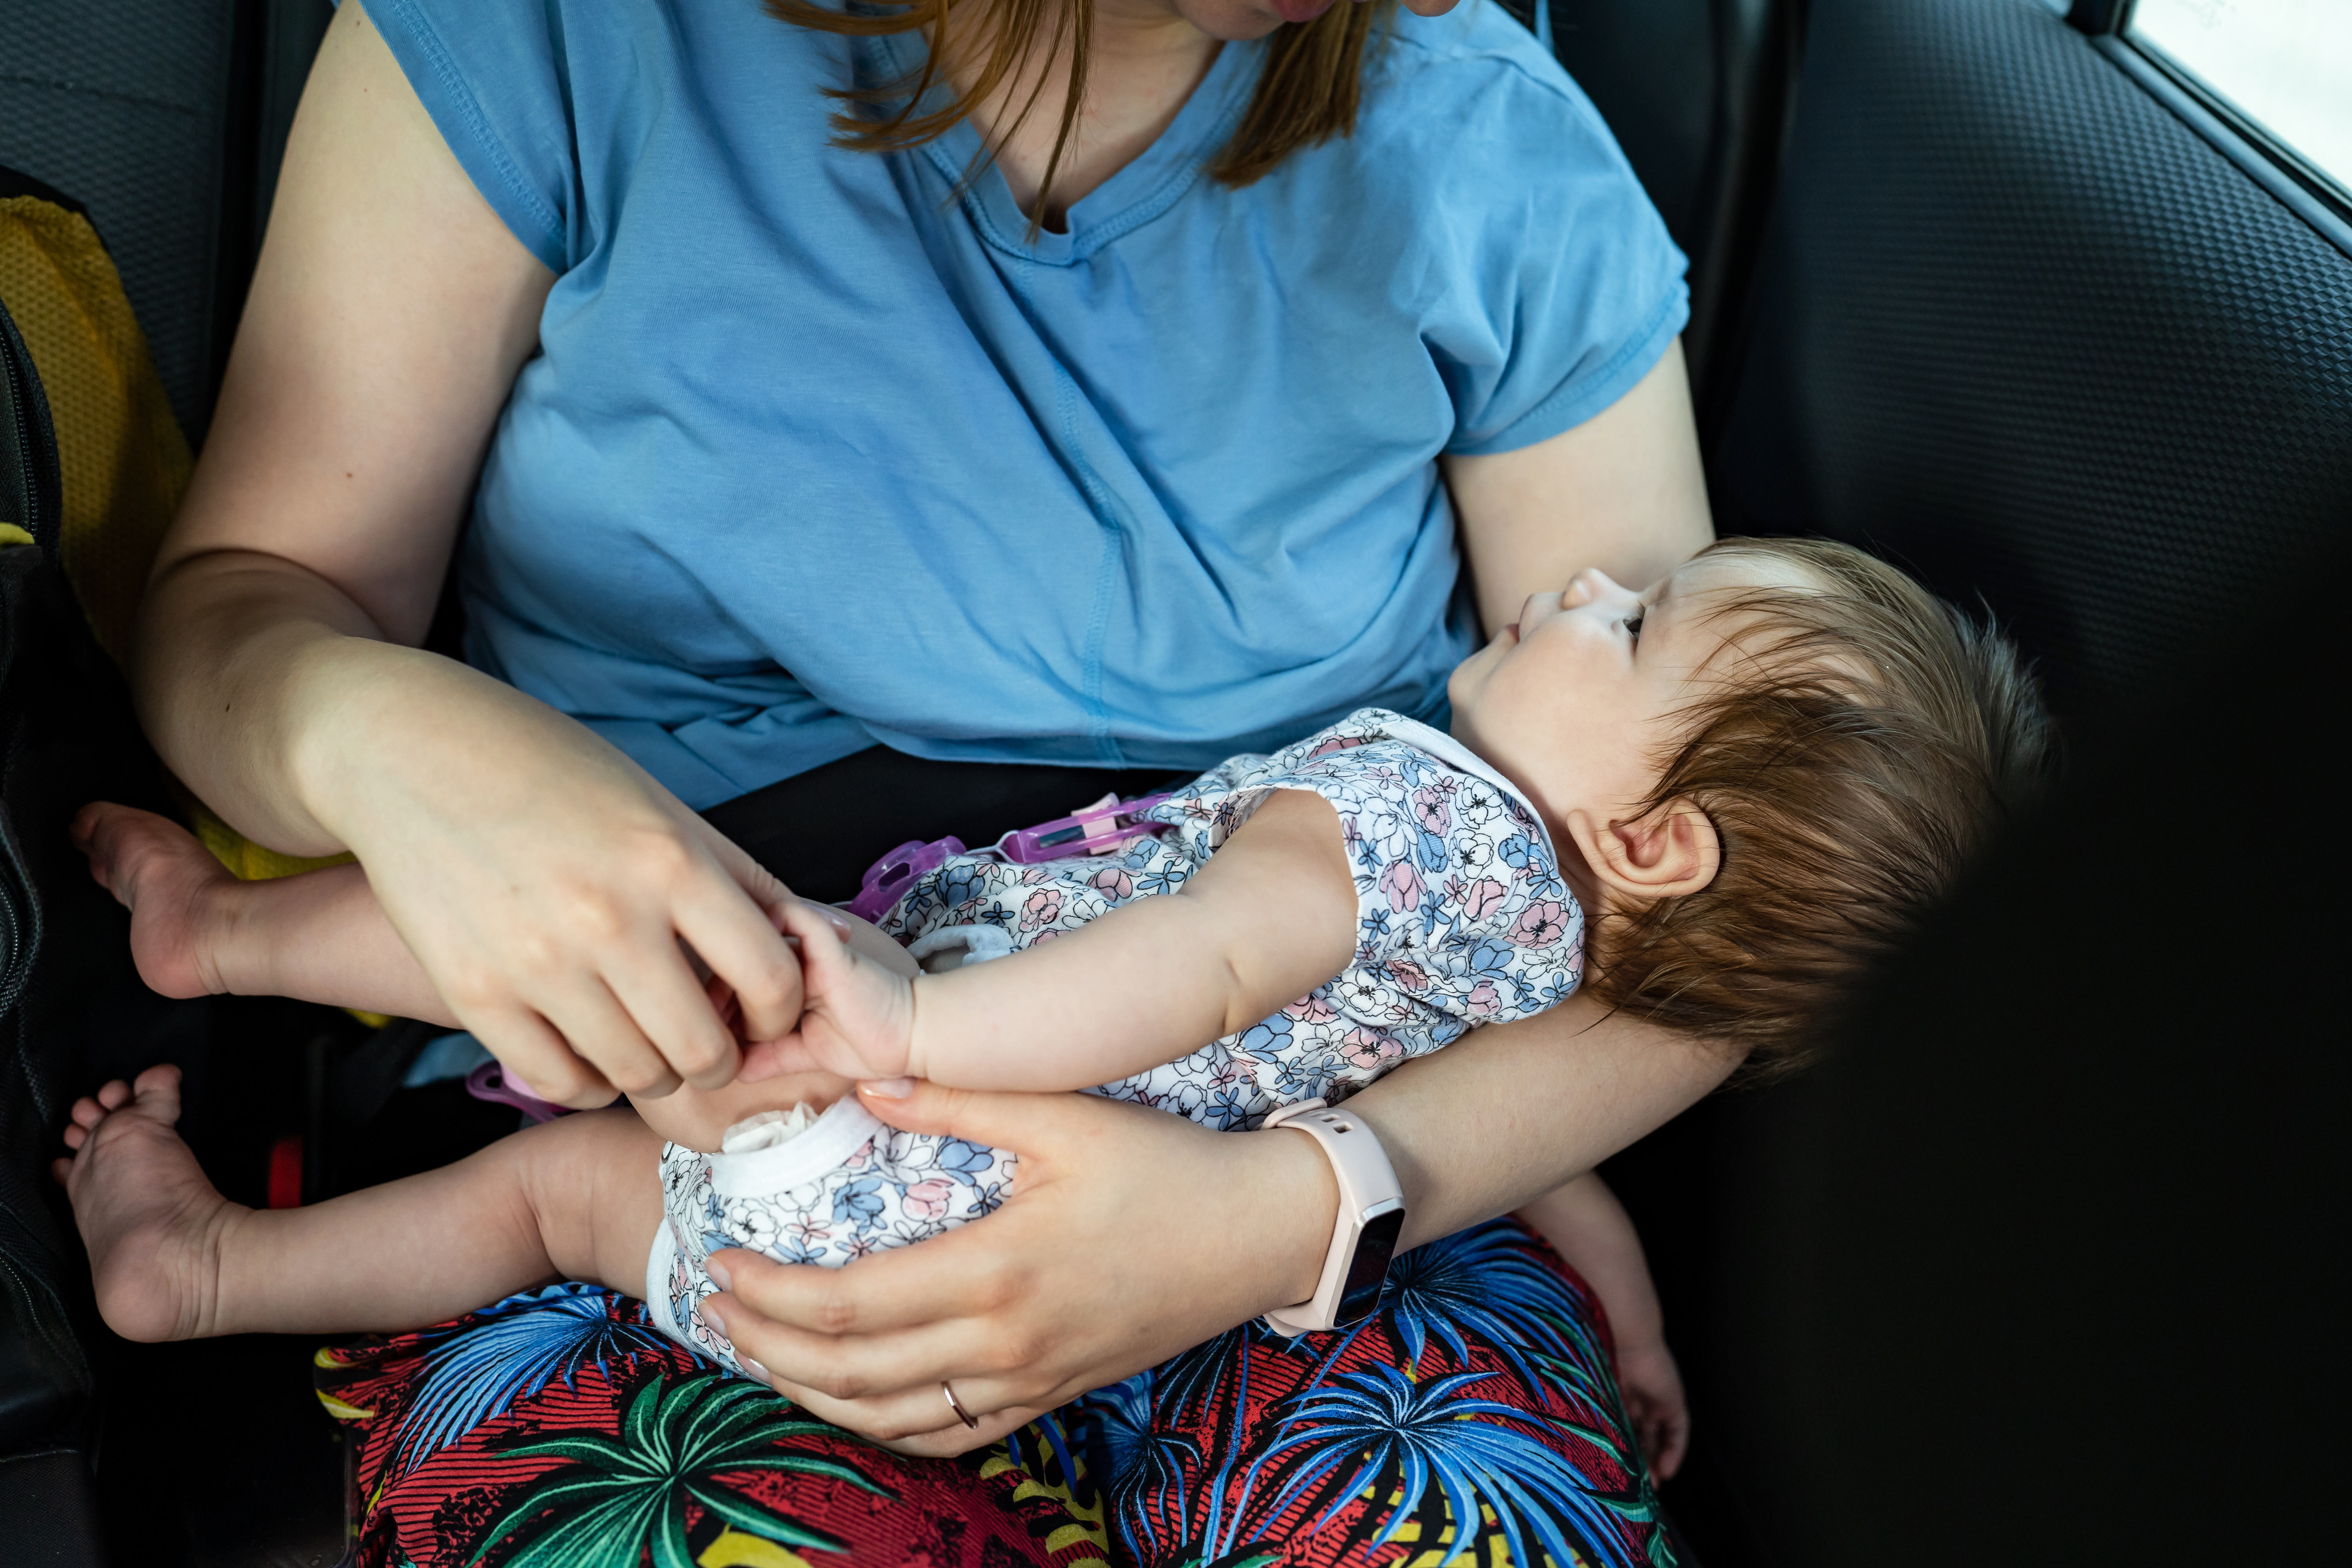 Bebé de cuatro meses en el regazo de su madre desconocida que la sostiene en el asiento trasero del Automóvil. | Fuente: Shutterstock